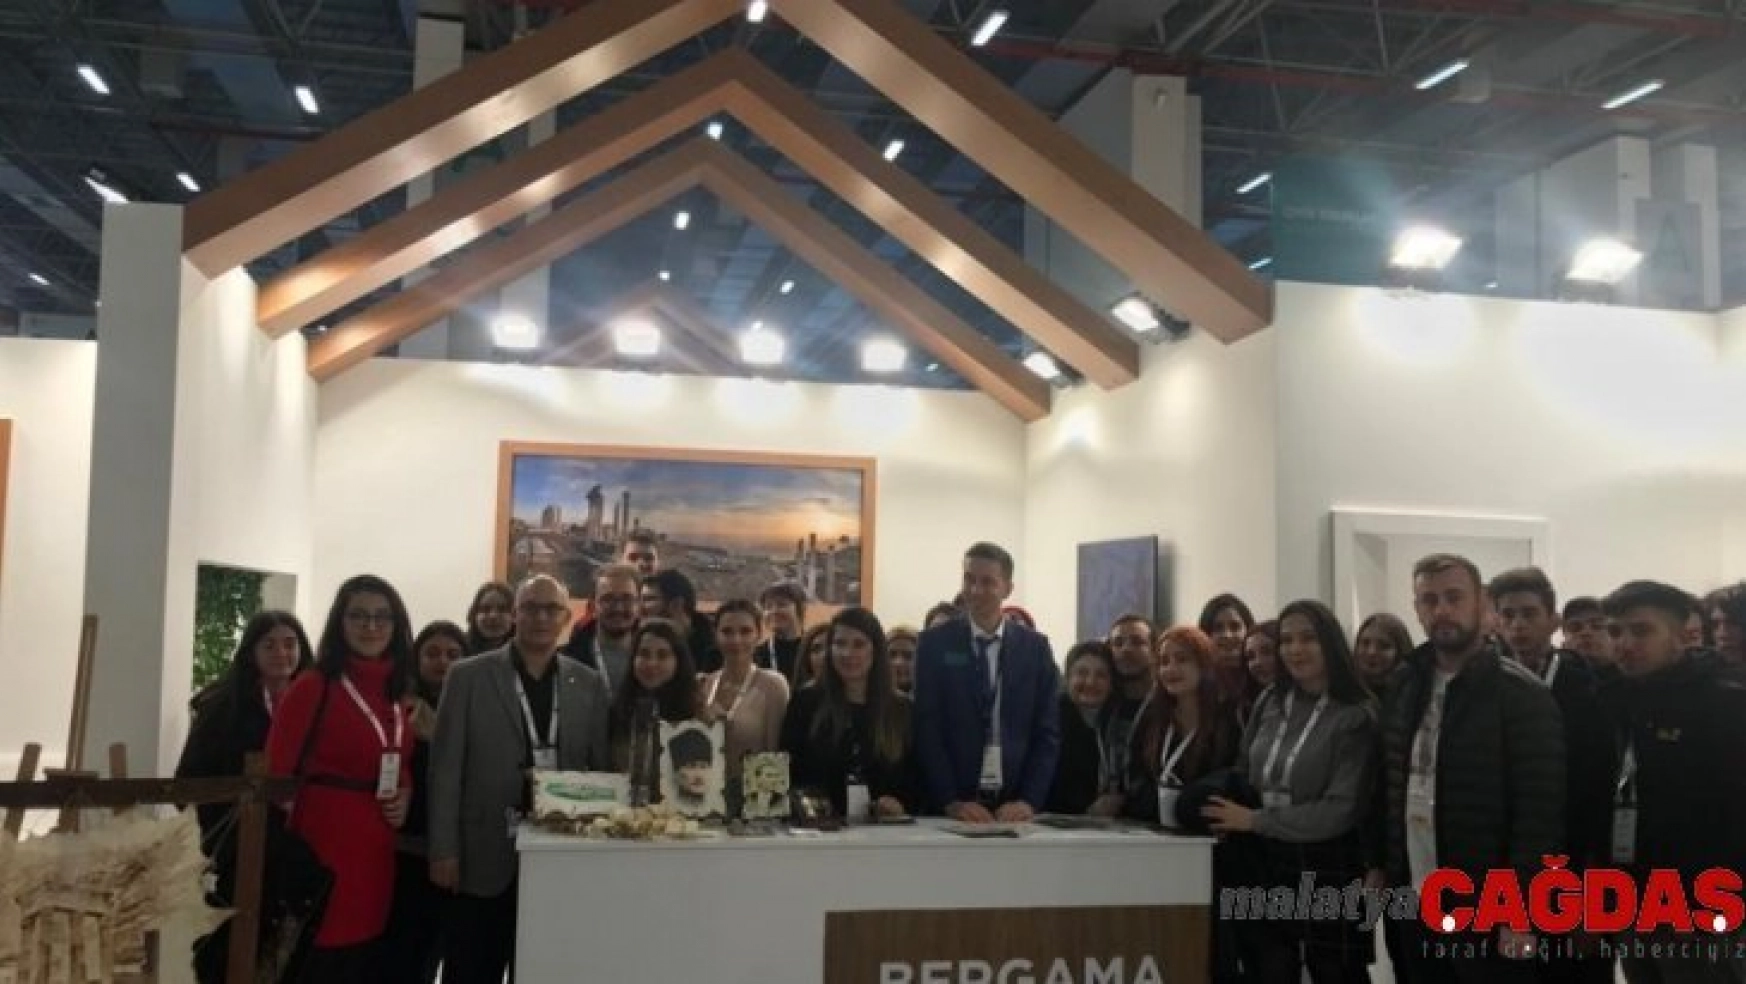 Travel Turkey Fuarı'nda Bergama'ya büyük ilgi